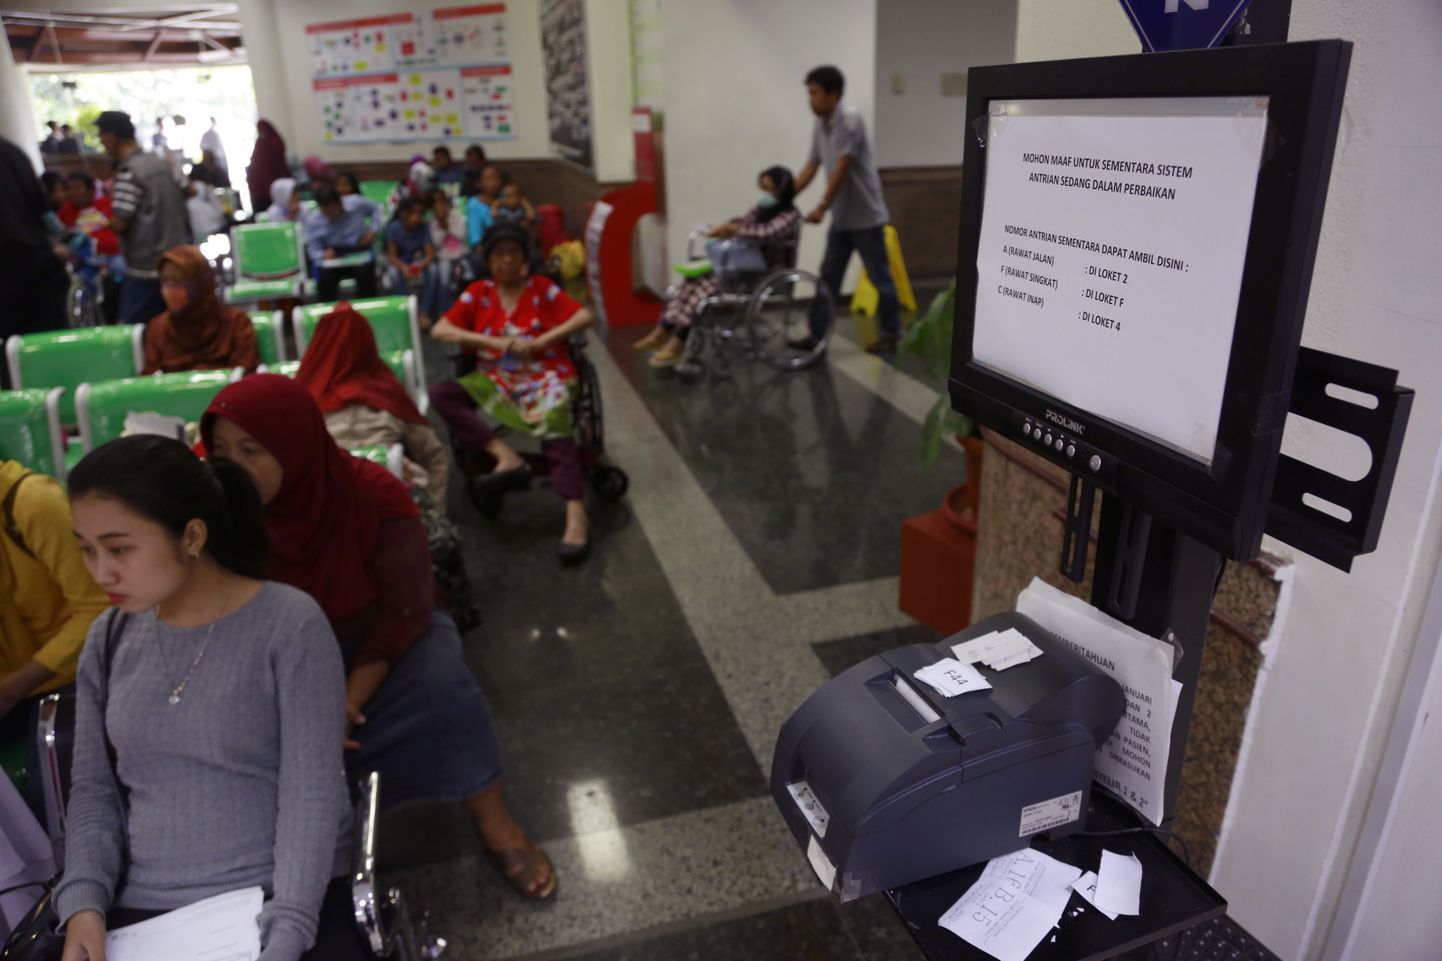 Patsendid lunavara ohvriks langenud Jakarta haiglas